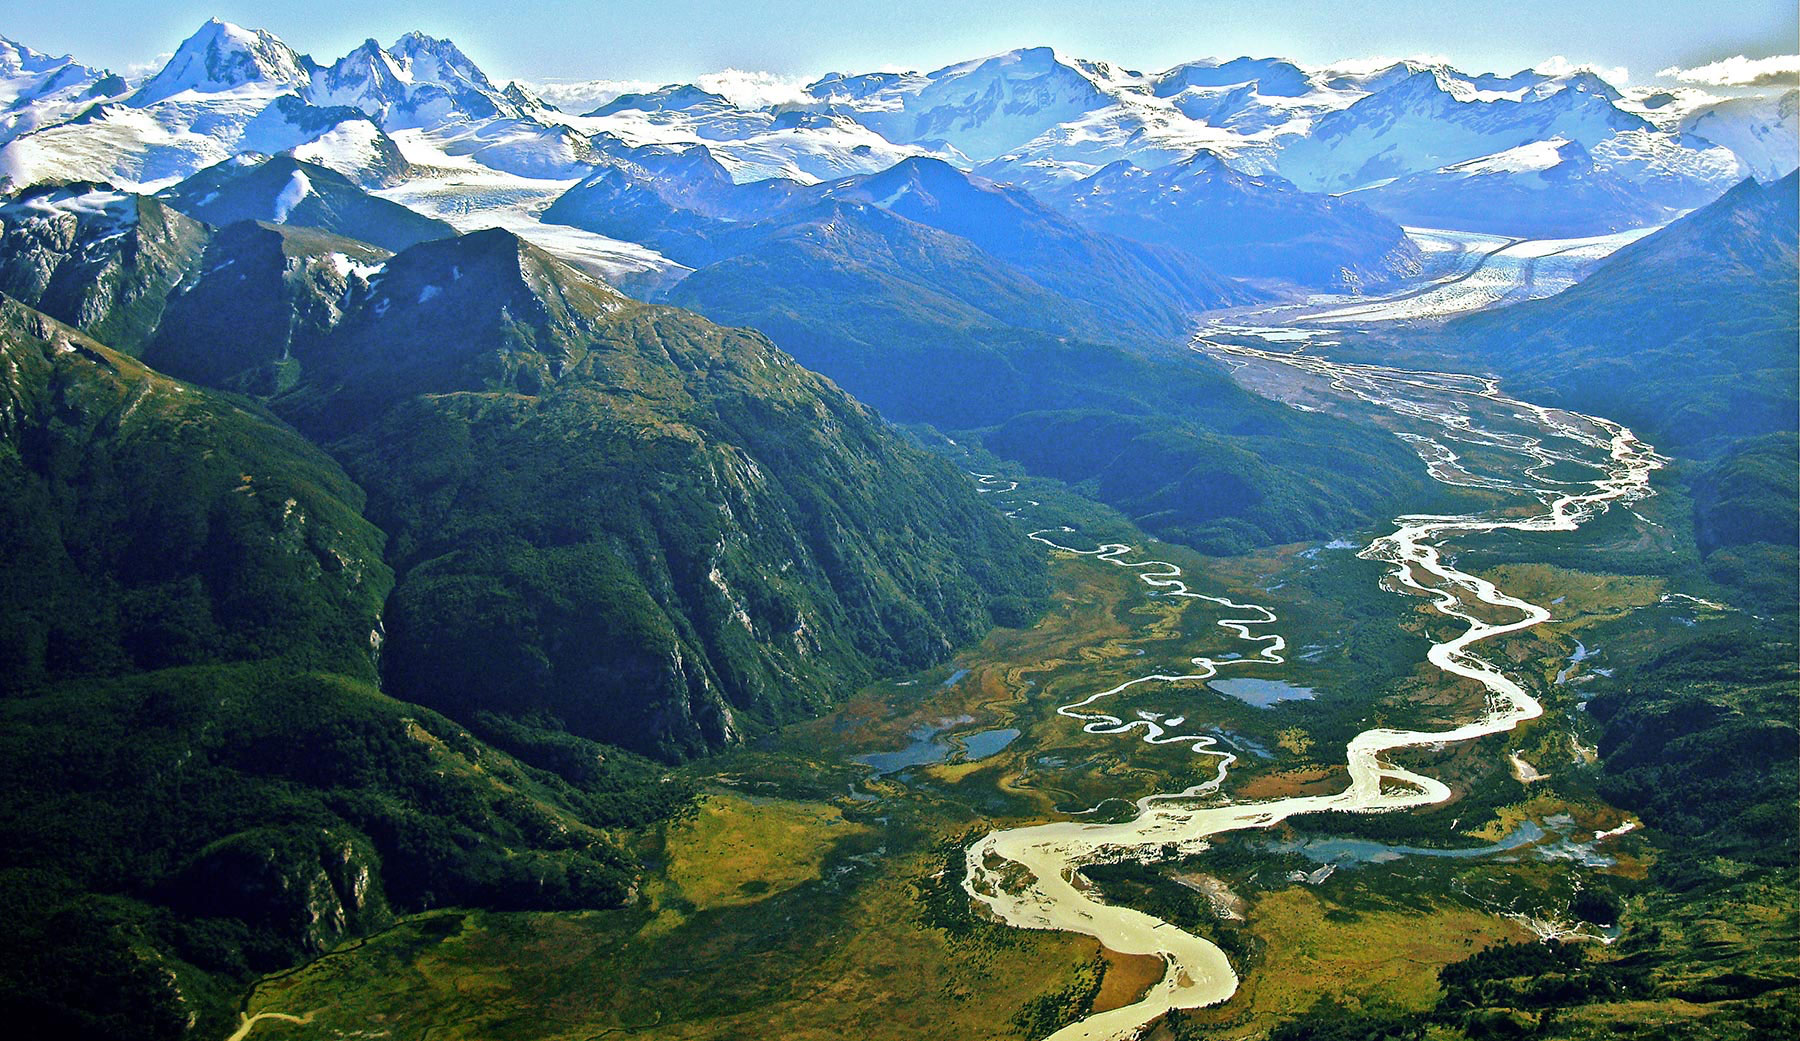 Turismo en Magallanes | Conozca el Parque Nacional Yendegaia en Tierra del Fuego